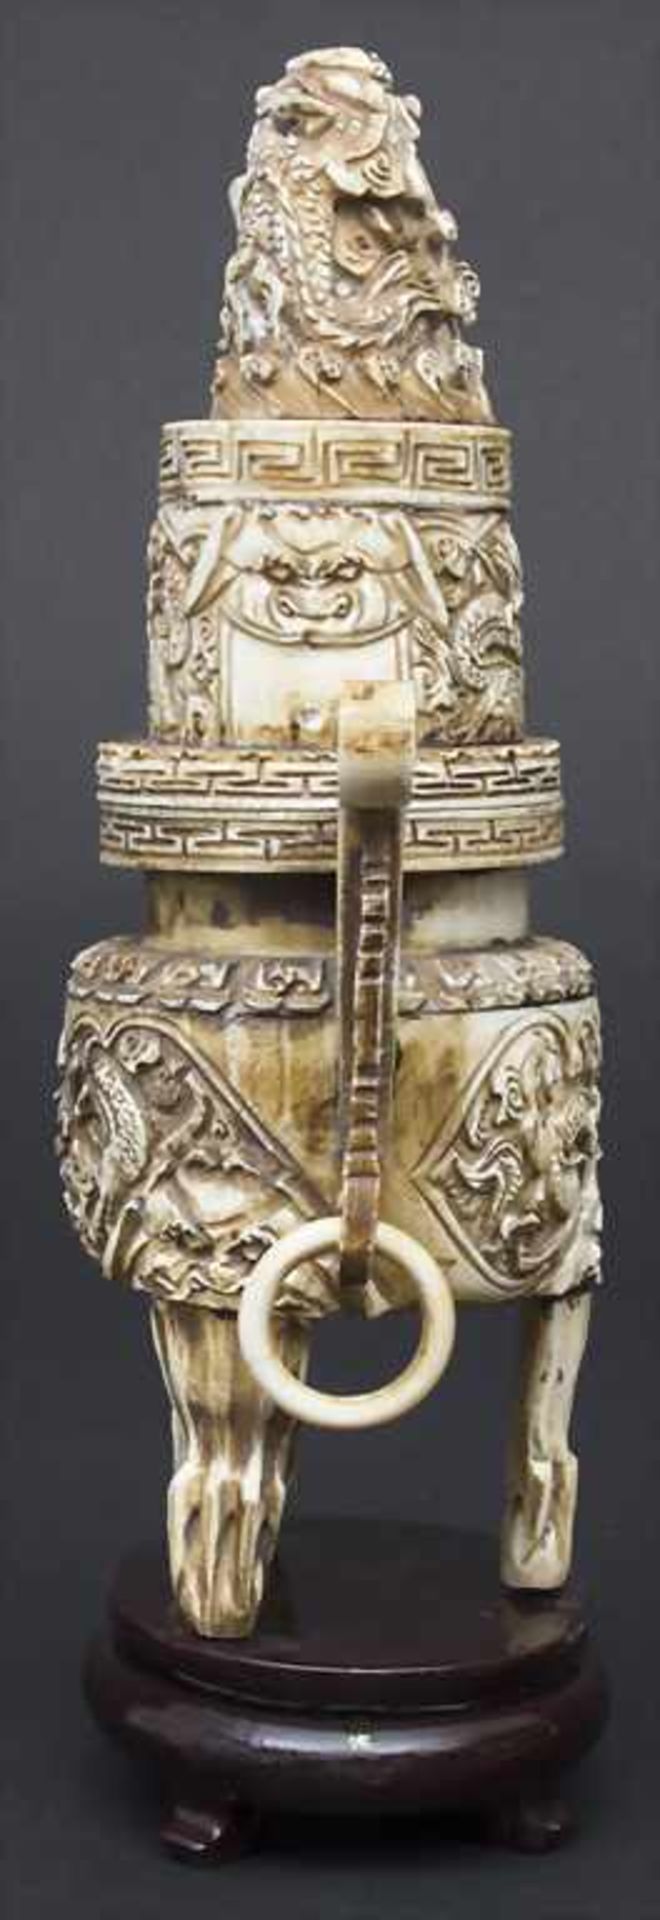 Räuchergefäß mit Drachendekor / An incense burner with dragons, China, um 1900Material: Elfenbein, - Bild 6 aus 11